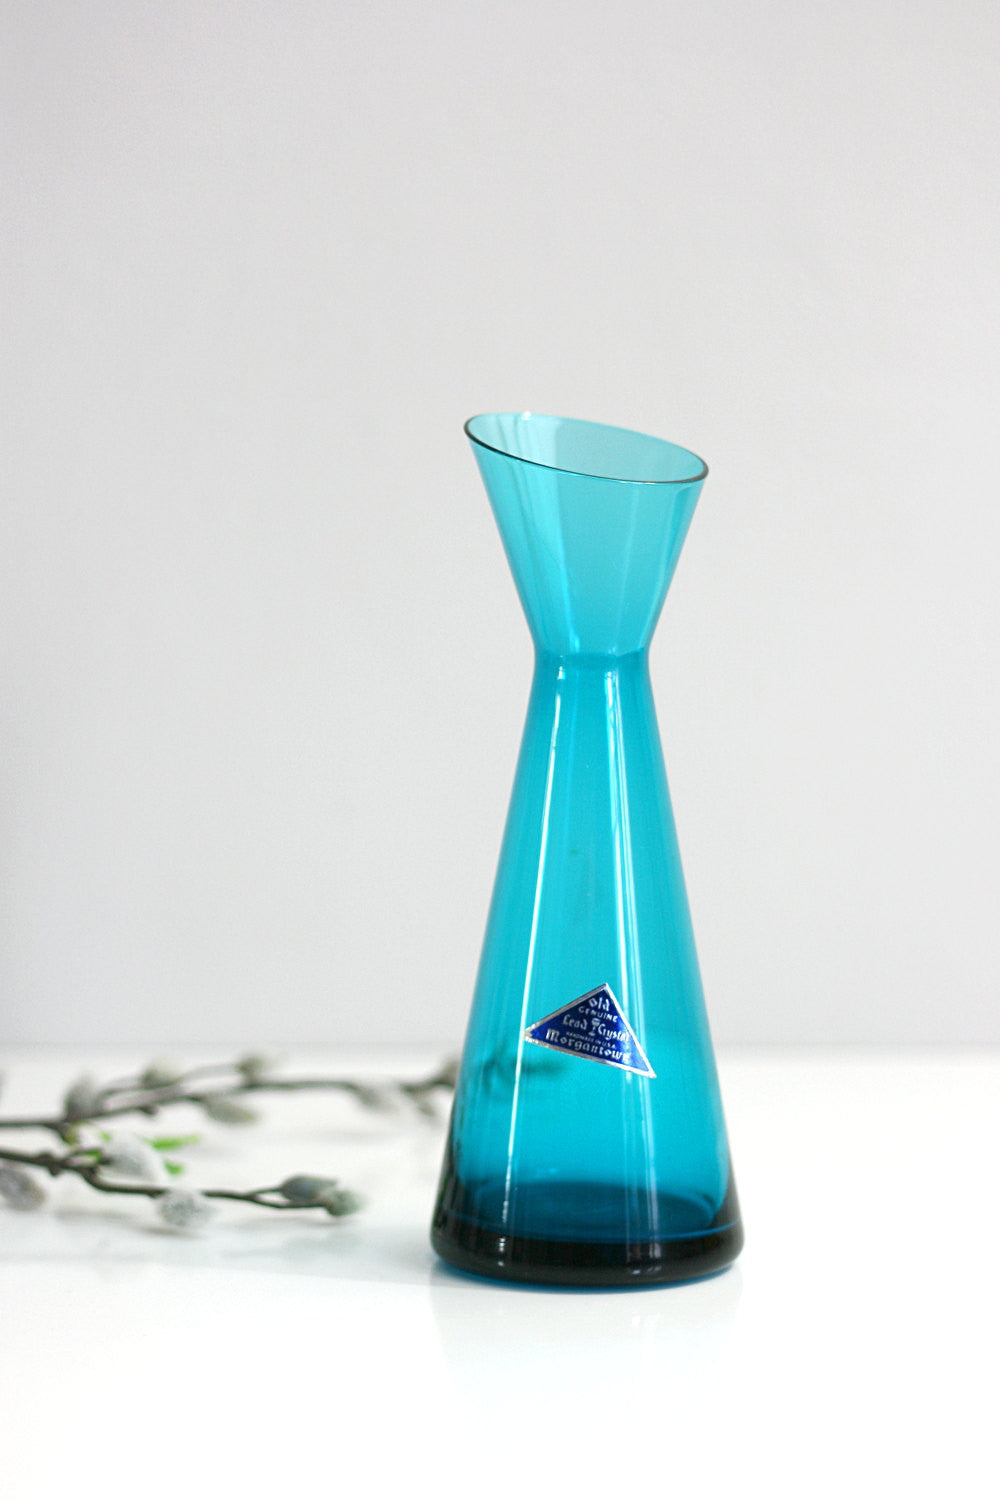 SOLD - Mid Century Modern Morgantown Glass Adams Slant Top Lead Crystal Vase in Peacock Blue